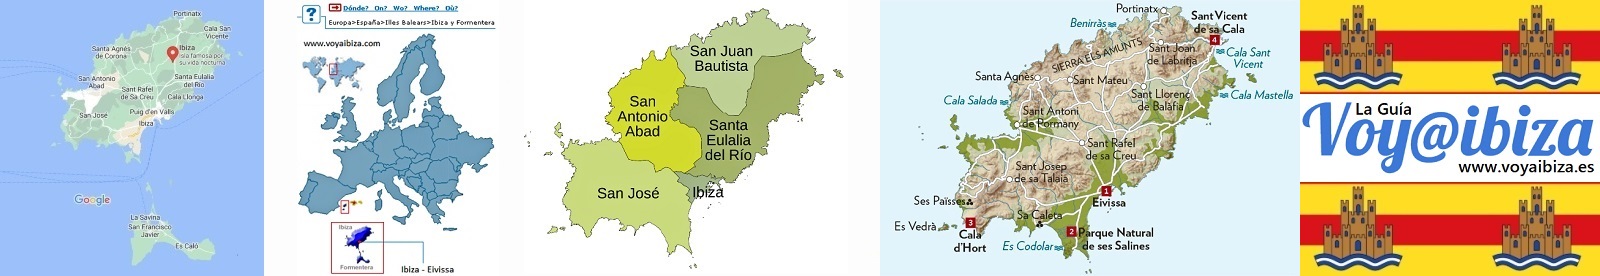 Mapas de Ibiza: datos e información